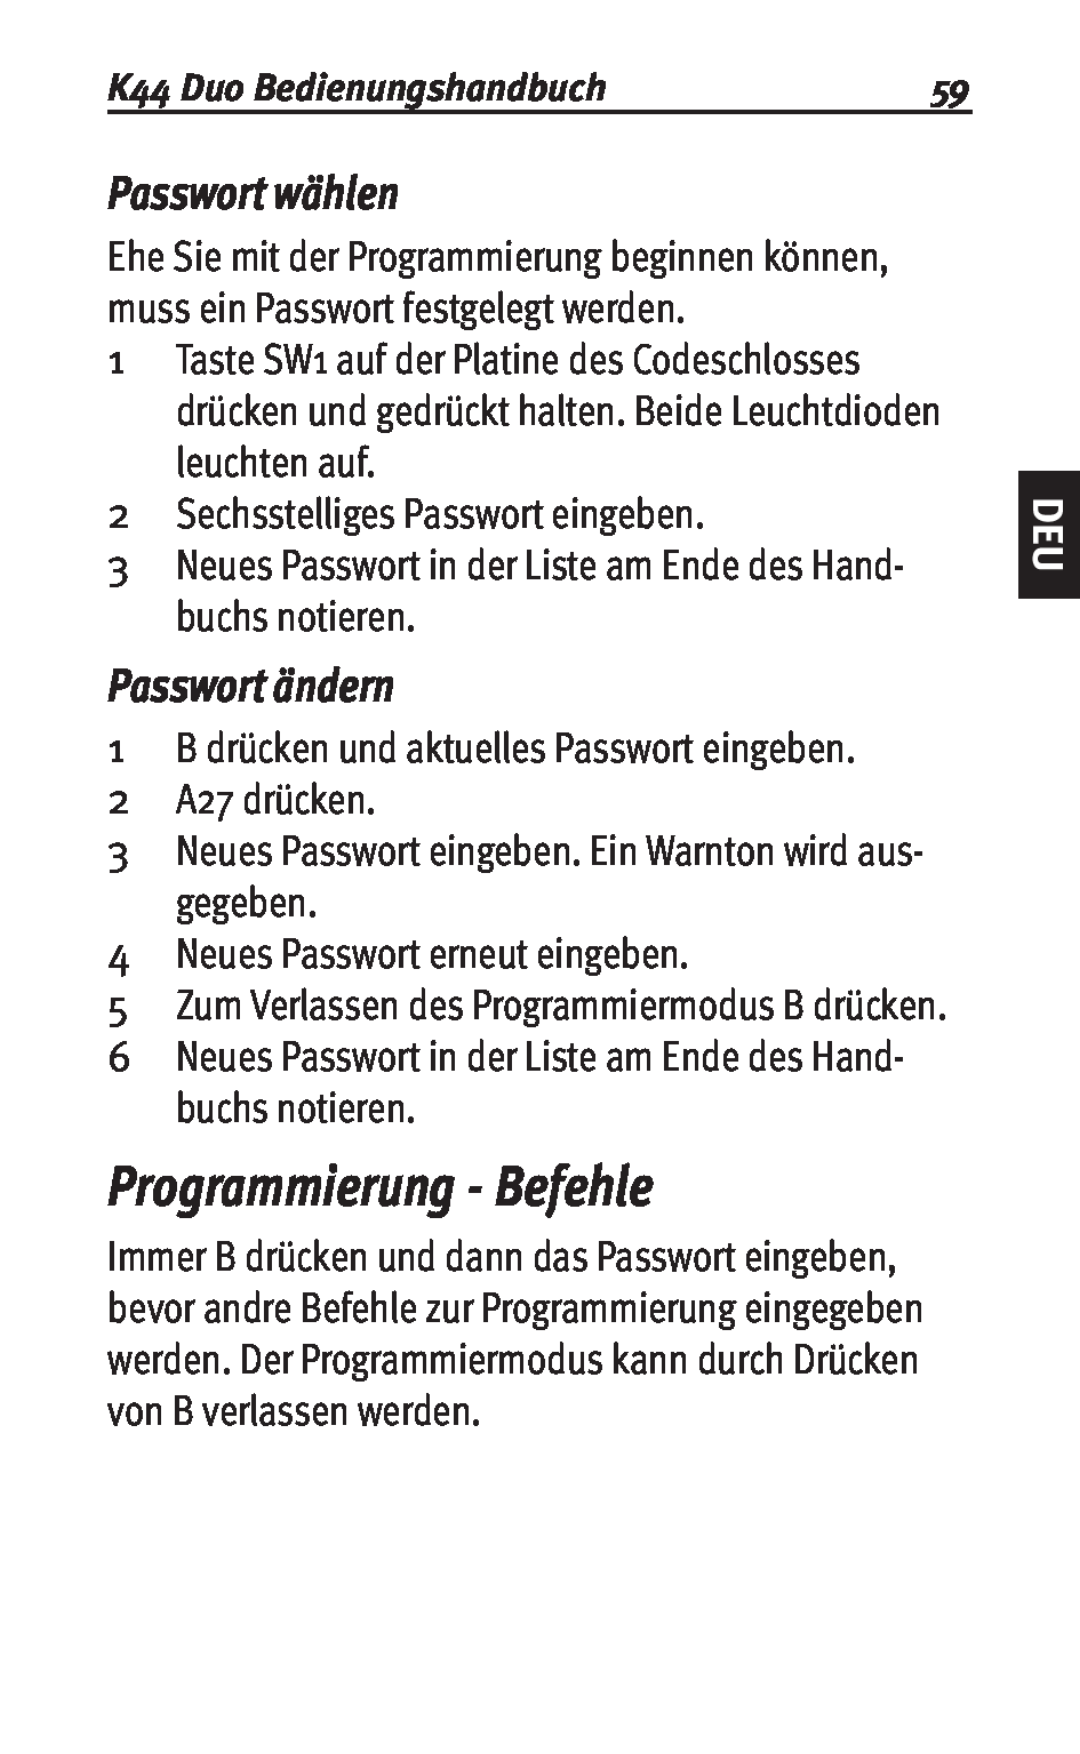 Siemens user manual Programmierung - Befehle, Passwort wählen, Passwort ändern, K44 Duo Bedienungshandbuch 